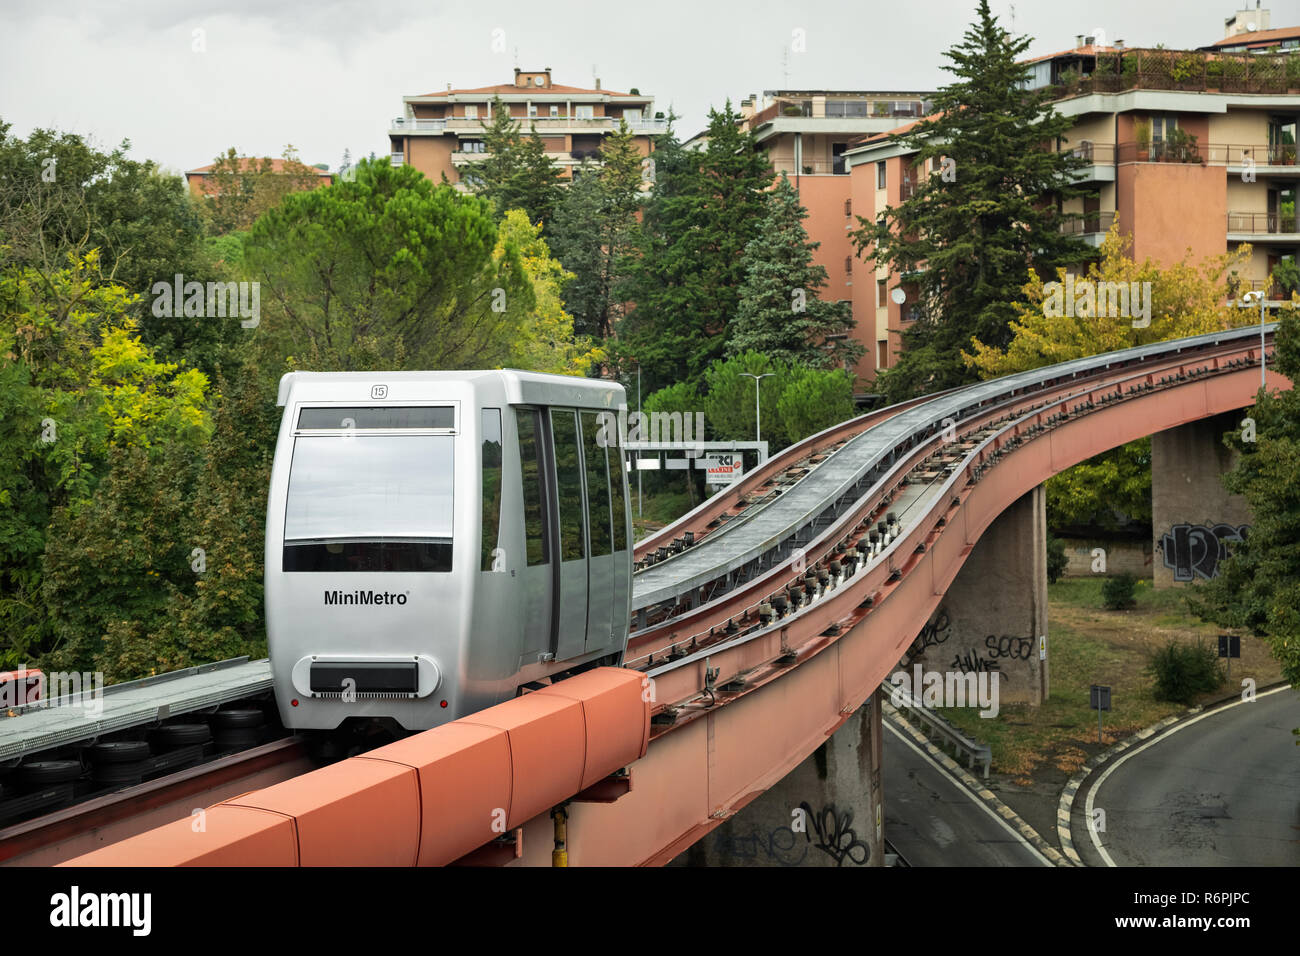 Perugia, Italia - 01 Ottobre 2018: Trasporto di Minimetro - un cavo azionato automated people mover system Foto Stock